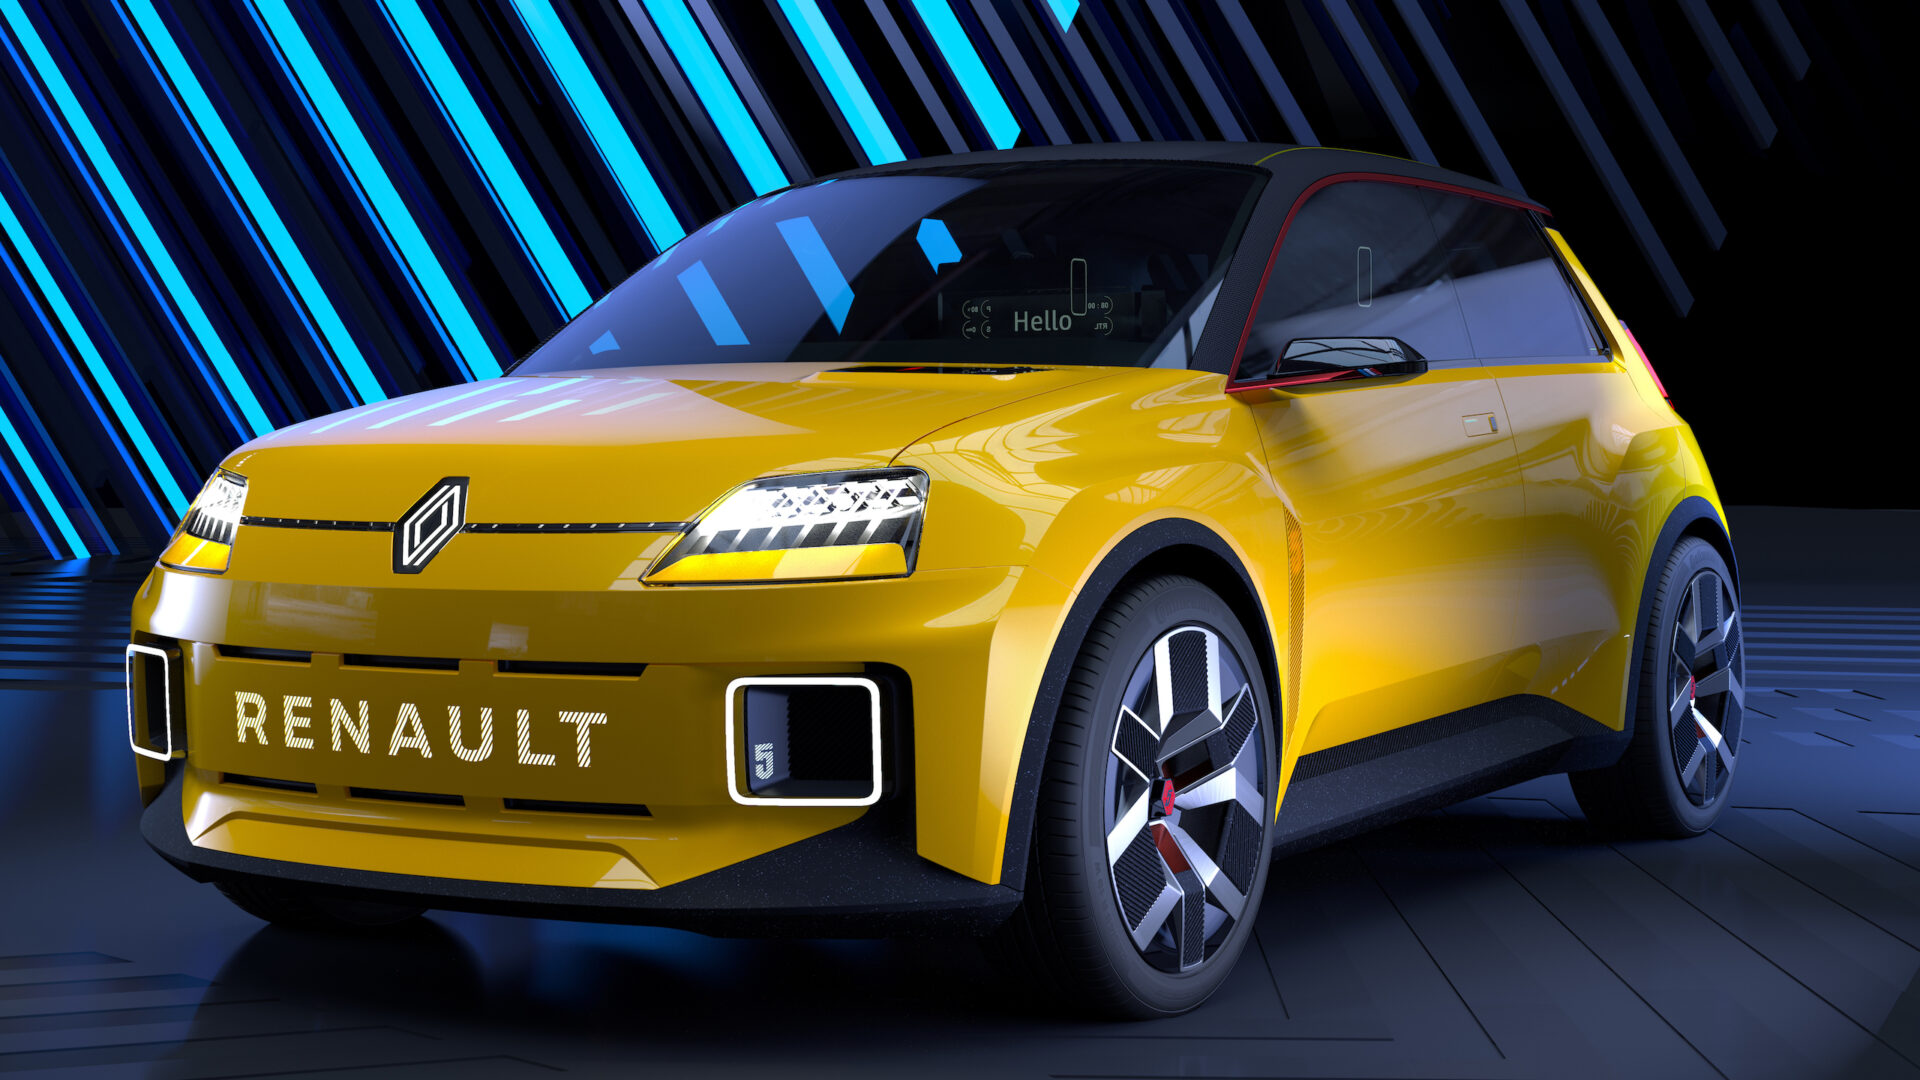 Mer info om Renault 5 nå som premieren er rett rundt hjørnet